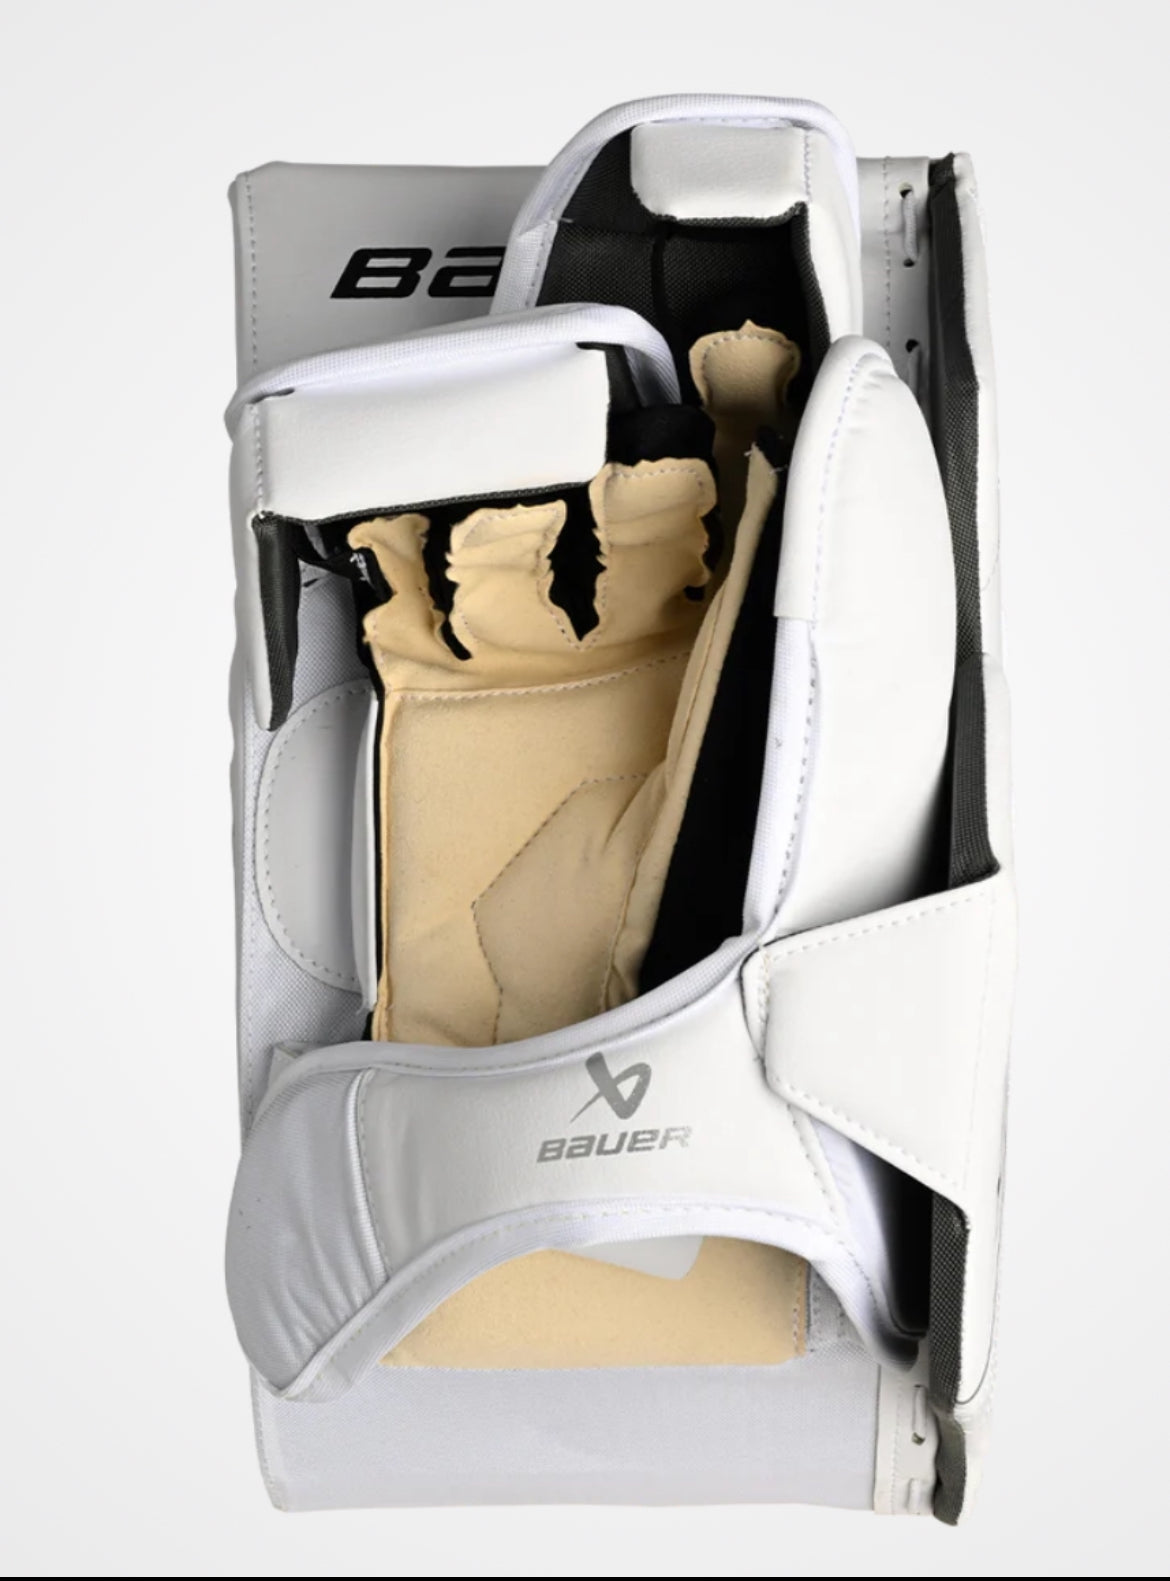 Bauer Sr. GSX Goalie Glove & Blocker Set - White